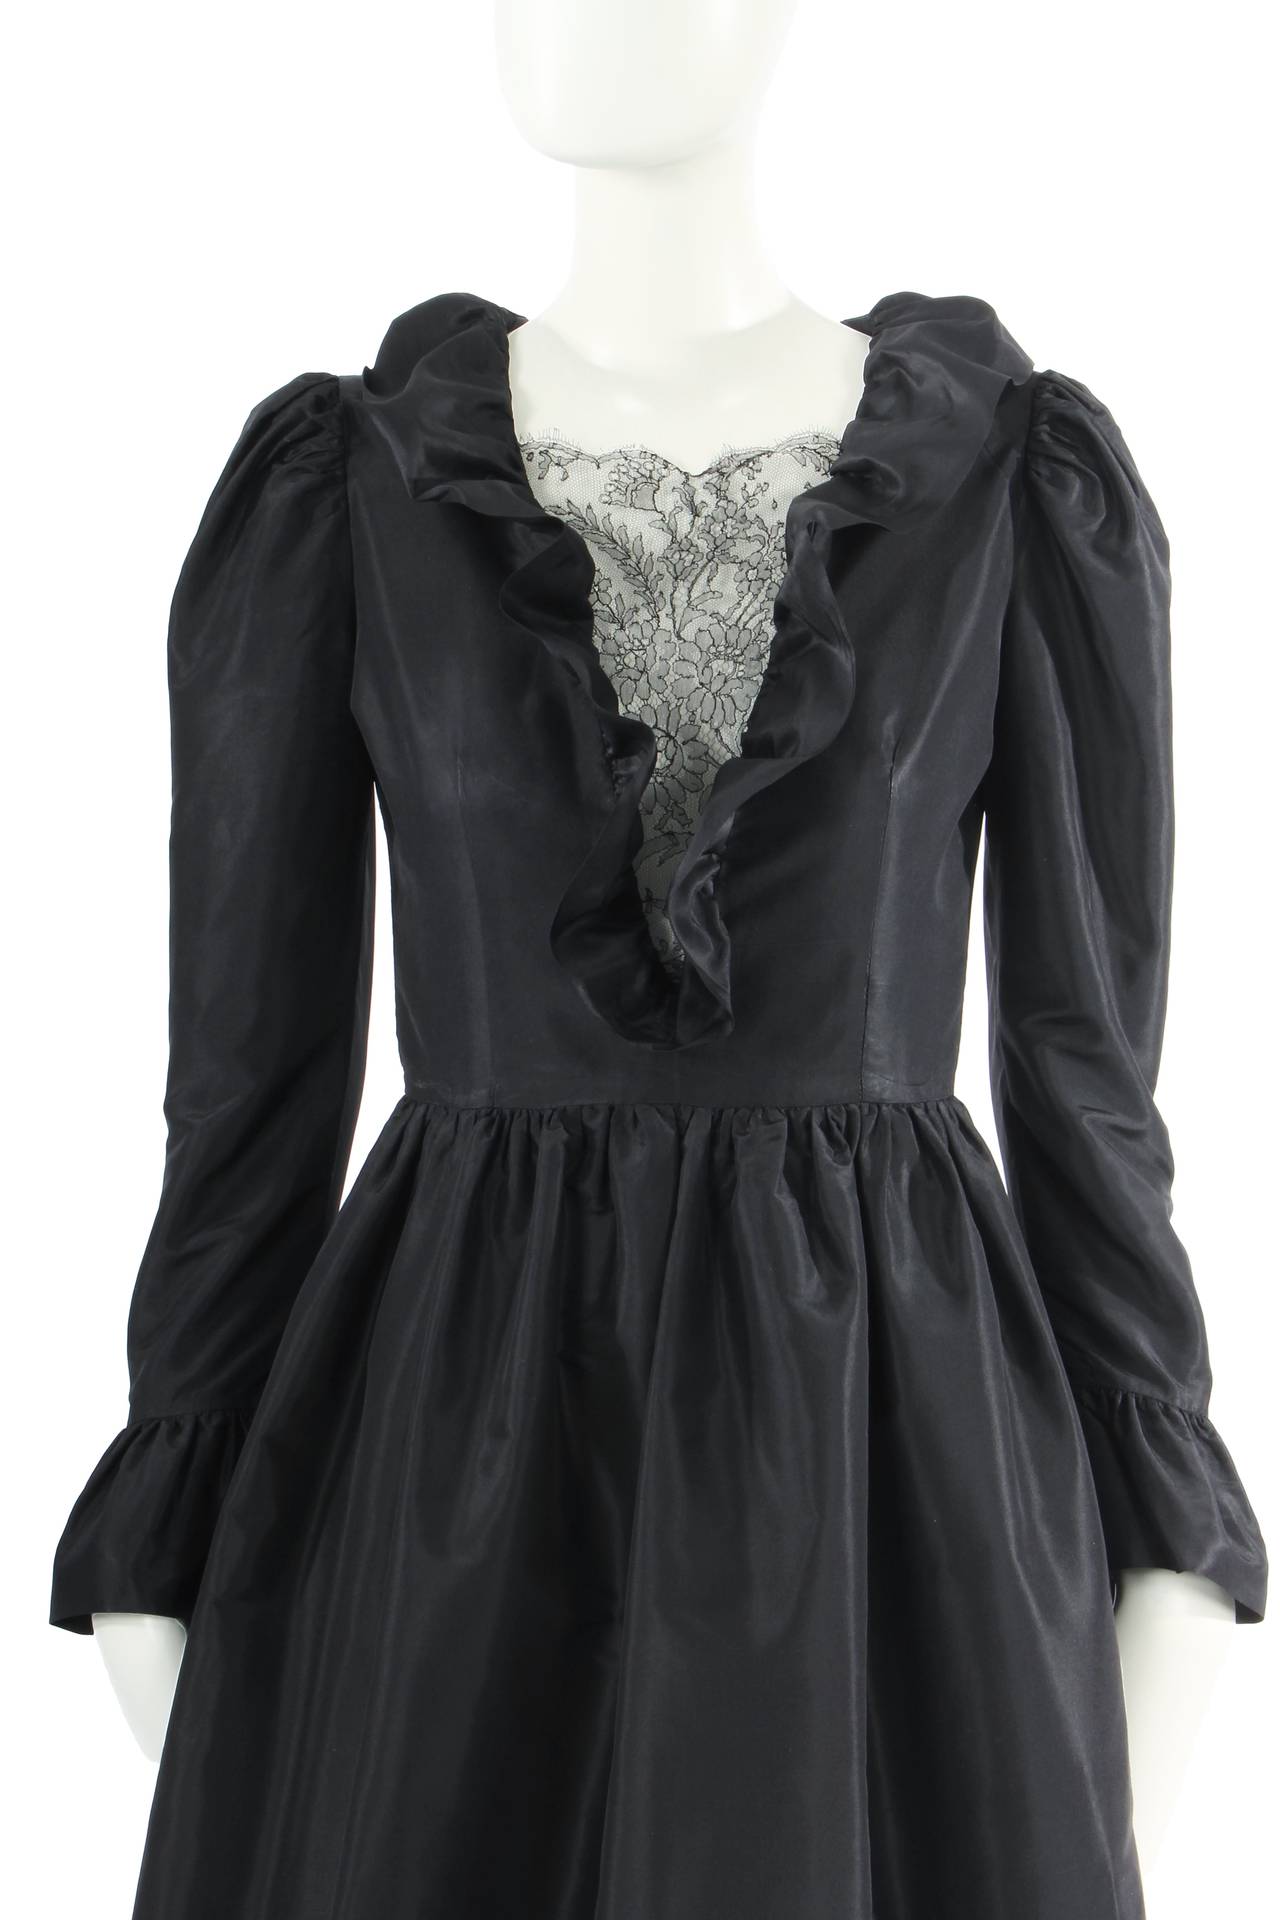 Lanvin haute couture black silk dress, circa 1984 For Sale 1